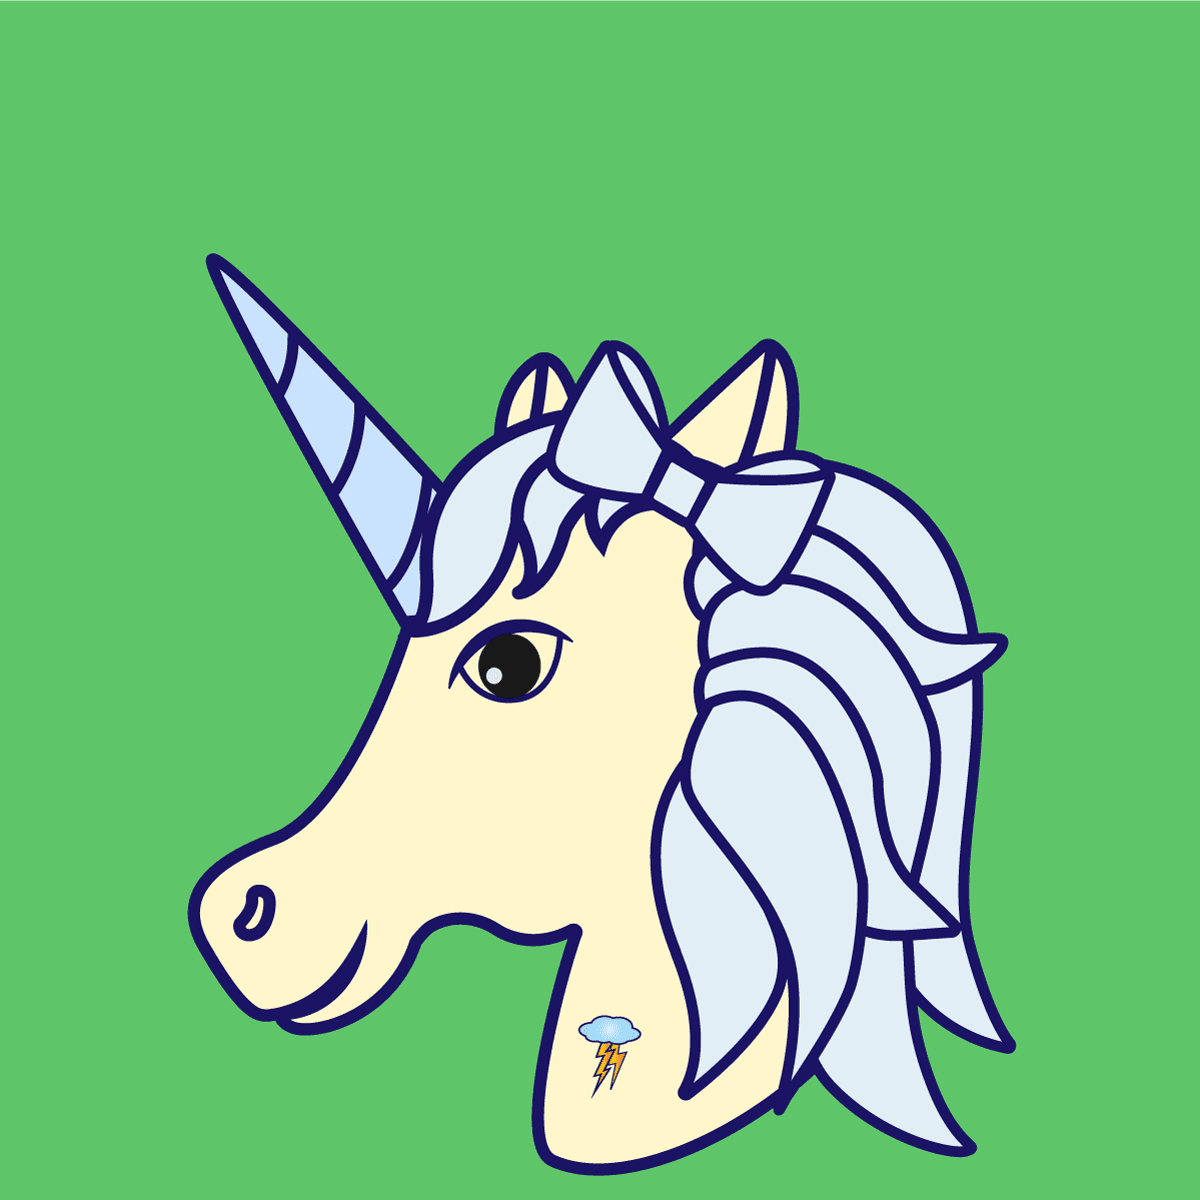 Uncanny Unicorn #100